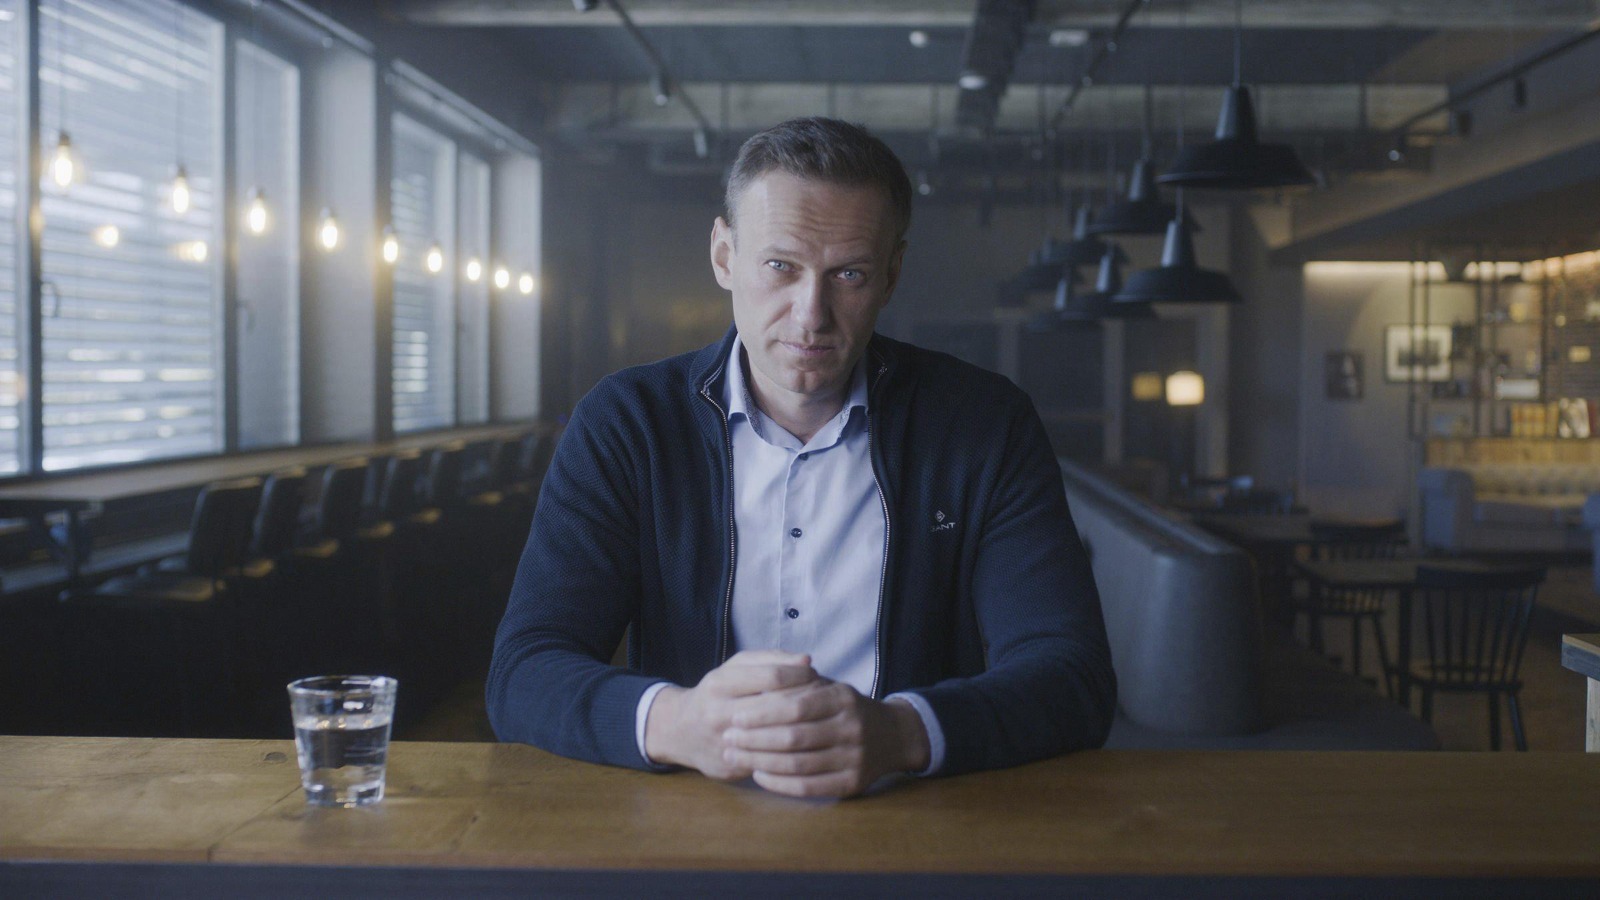 Cena do documentário Navalny. Na cena, vemos, do abdômen para cima, Alexey Navalny, um homem branco, aparentando ter cerca de 40 anos, de cabelos castanhos curtos, vestindo uma camisa azul clara e uma jaqueta azul escura, sentado por detrás de uma mesa de madeira, do que aparenta ser um bar. Ao lado esquerdo dele, vemos um copo d’água. Ele encara a câmera.